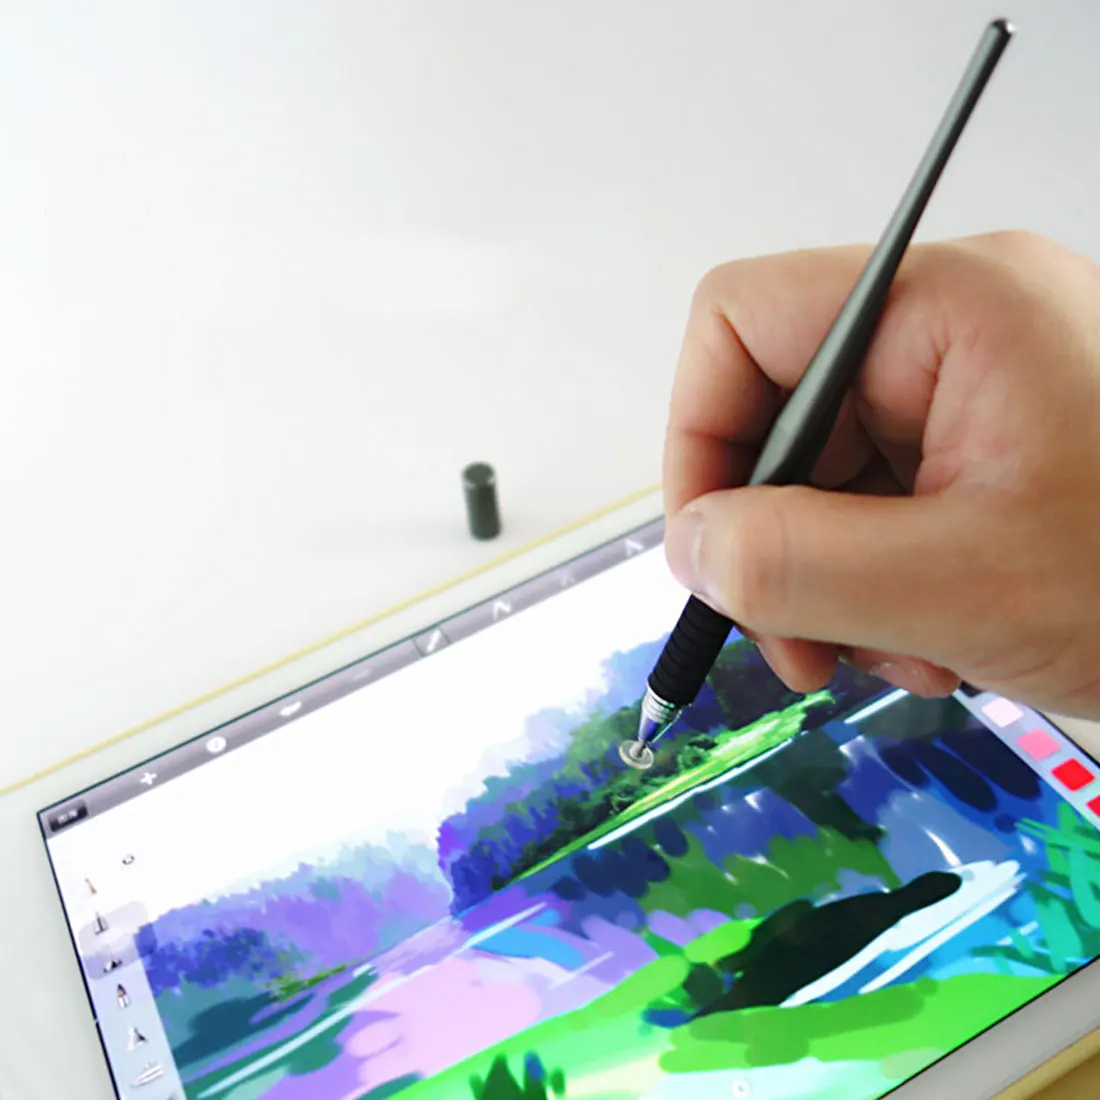 Etmakit, Хит, 2 в 1, емкостный стилус, новинка, металлическая ручка для рисования, стилус для сенсорного экрана, ручка для смартфона, планшета, ПК, для iPhone, iPad